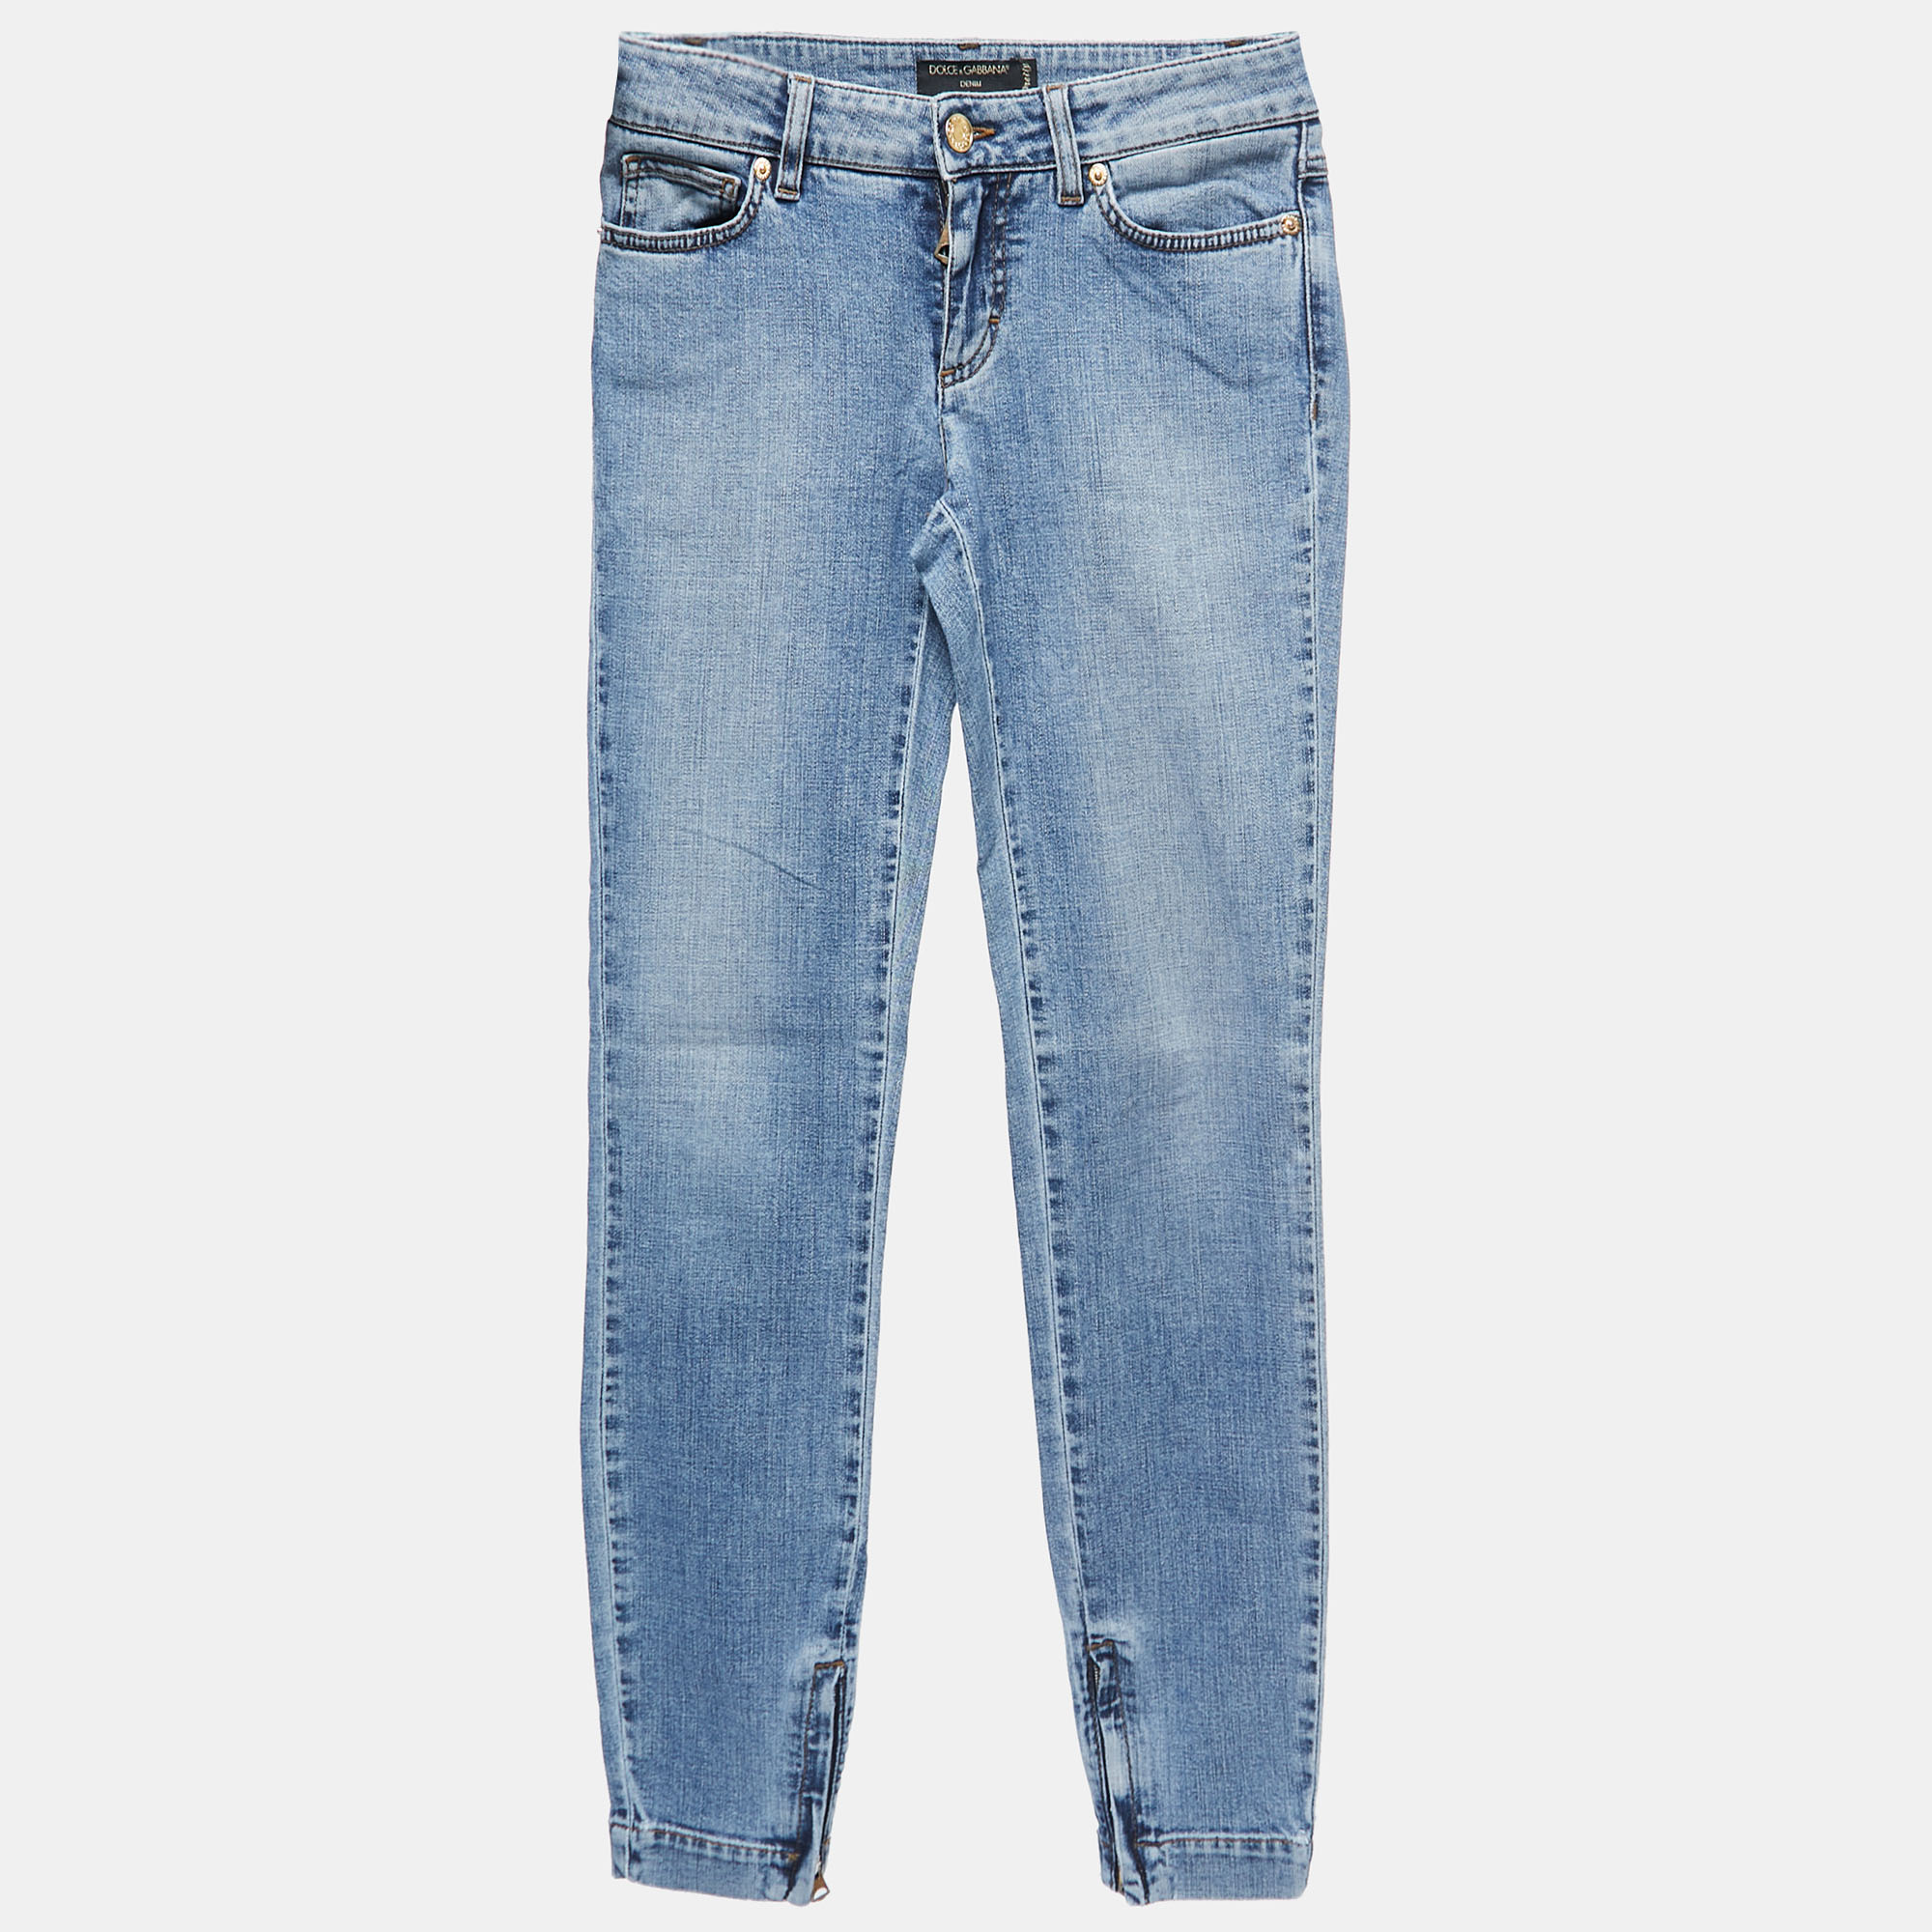 

Dolce & Gabbana Blue Washed Denim Skinny Jeans  Waist 27